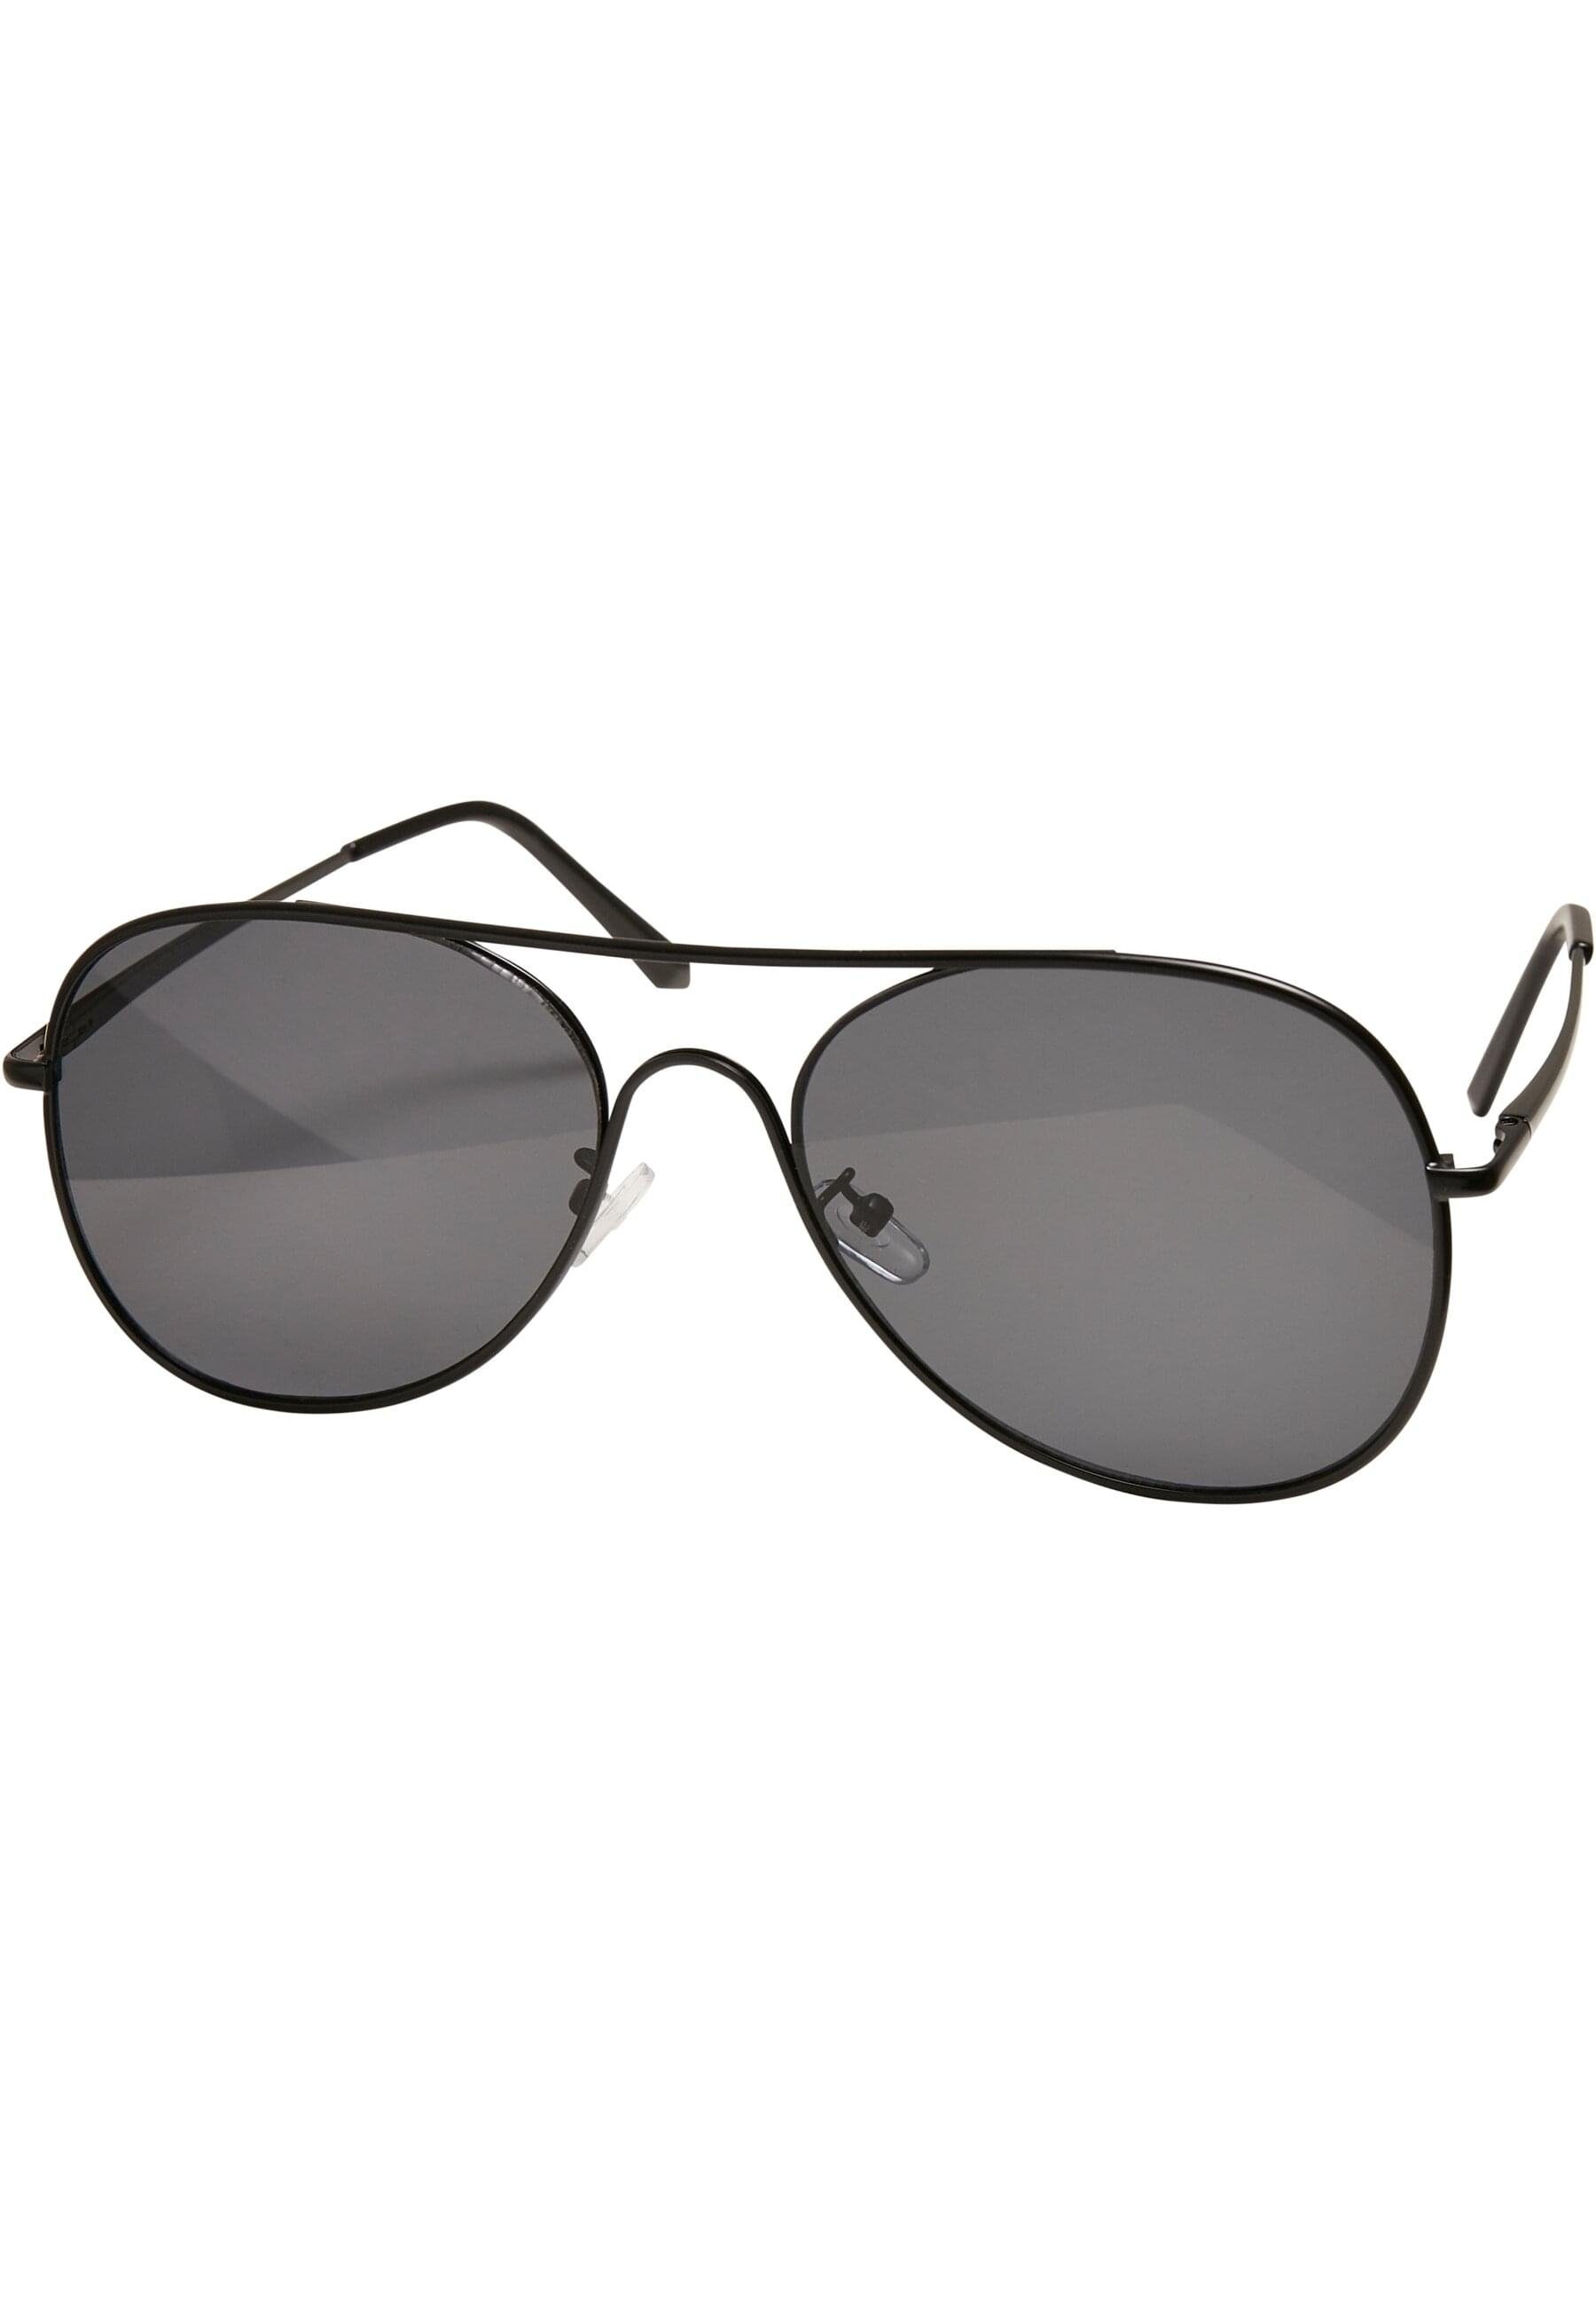 black/black Texas Sonnenbrille URBAN Sunglasses CLASSICS Unisex